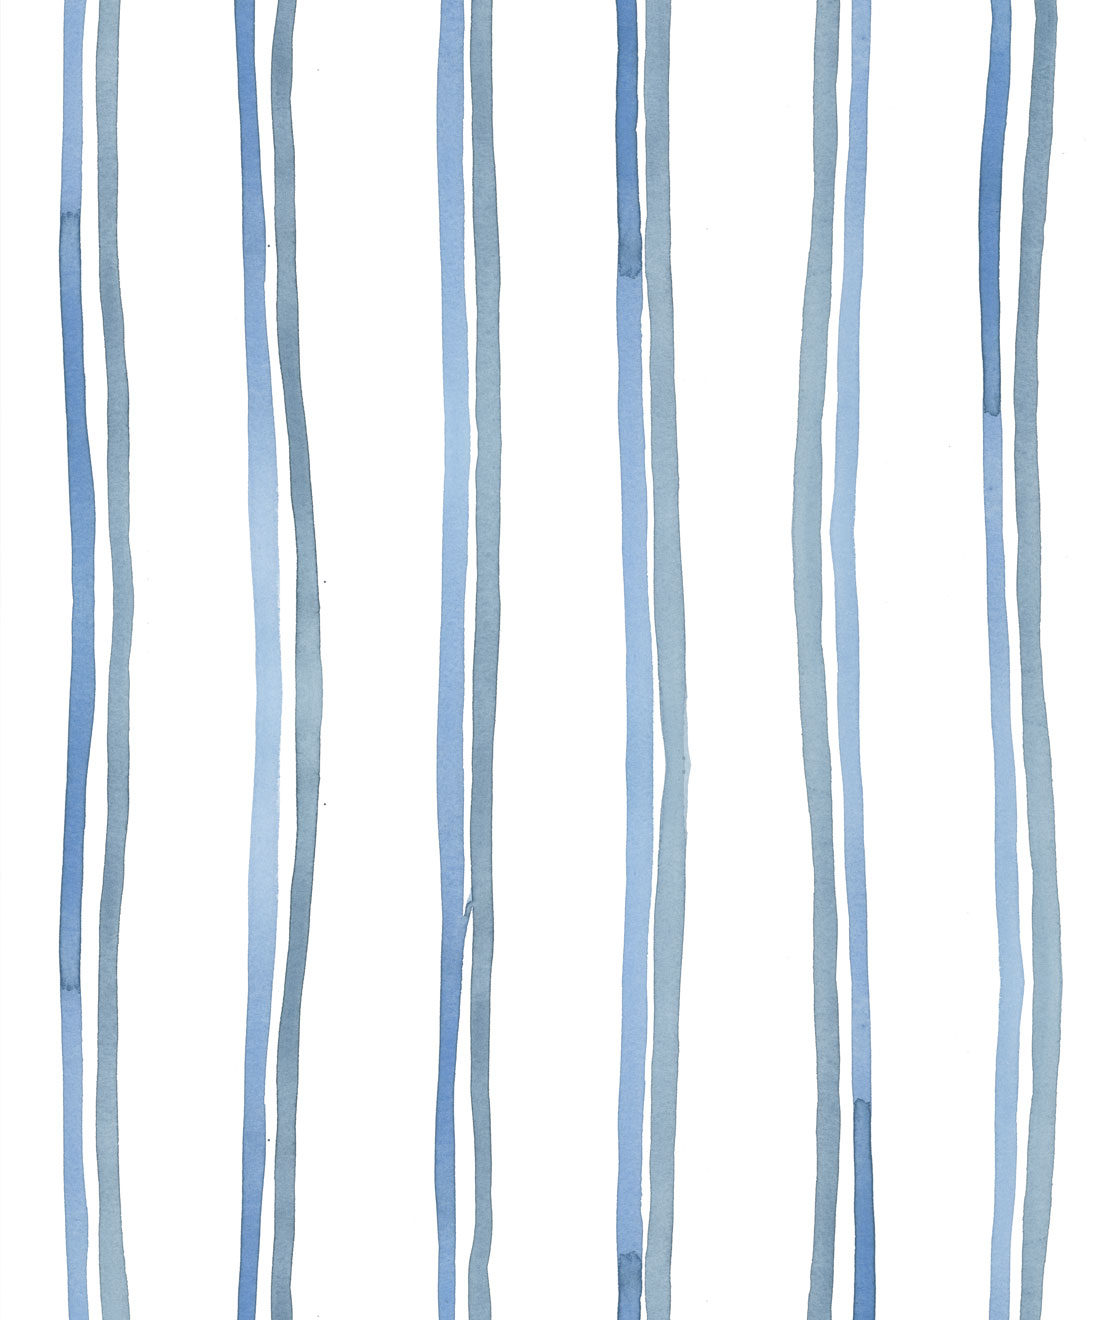 Double Inky Stripe - Gestreifte Tapete - Blau gestreiftes Design - Georgia MacMillan - Milton & King Europe